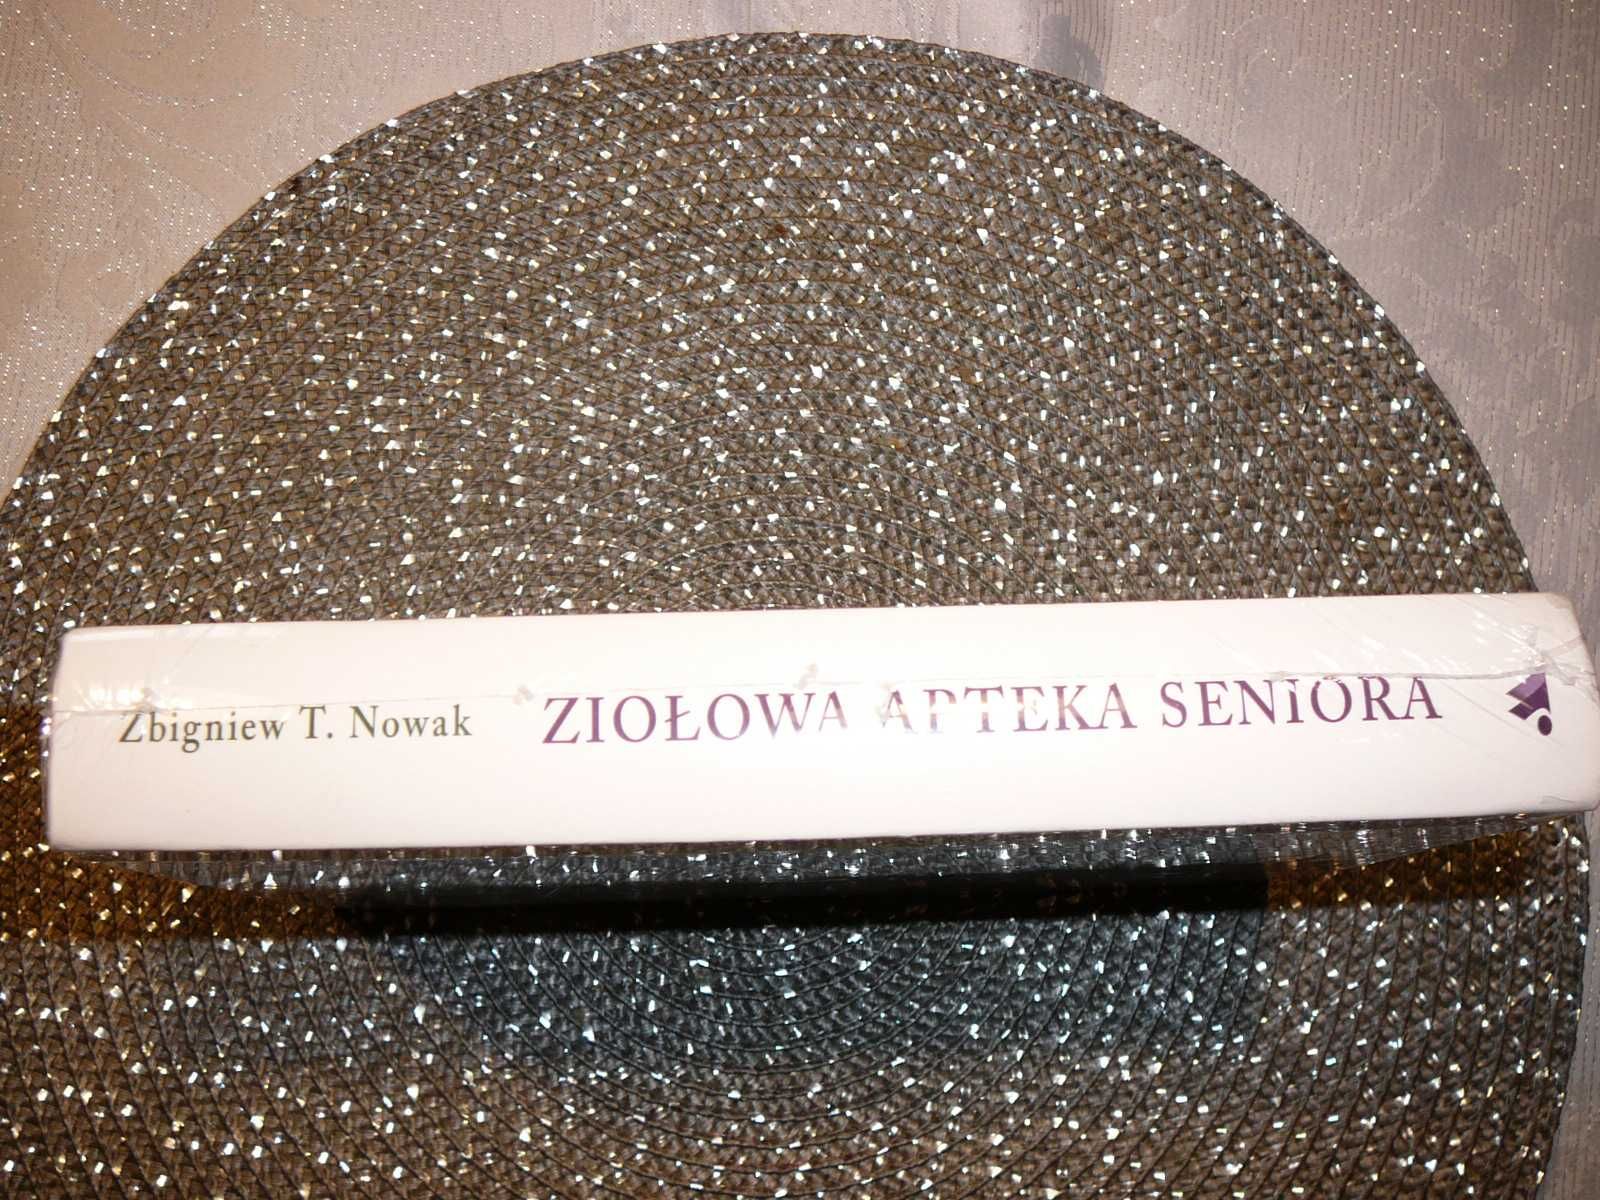 Ziołowa apteka seniora Zbigniew T, Nowak /nowa zafoliowana/